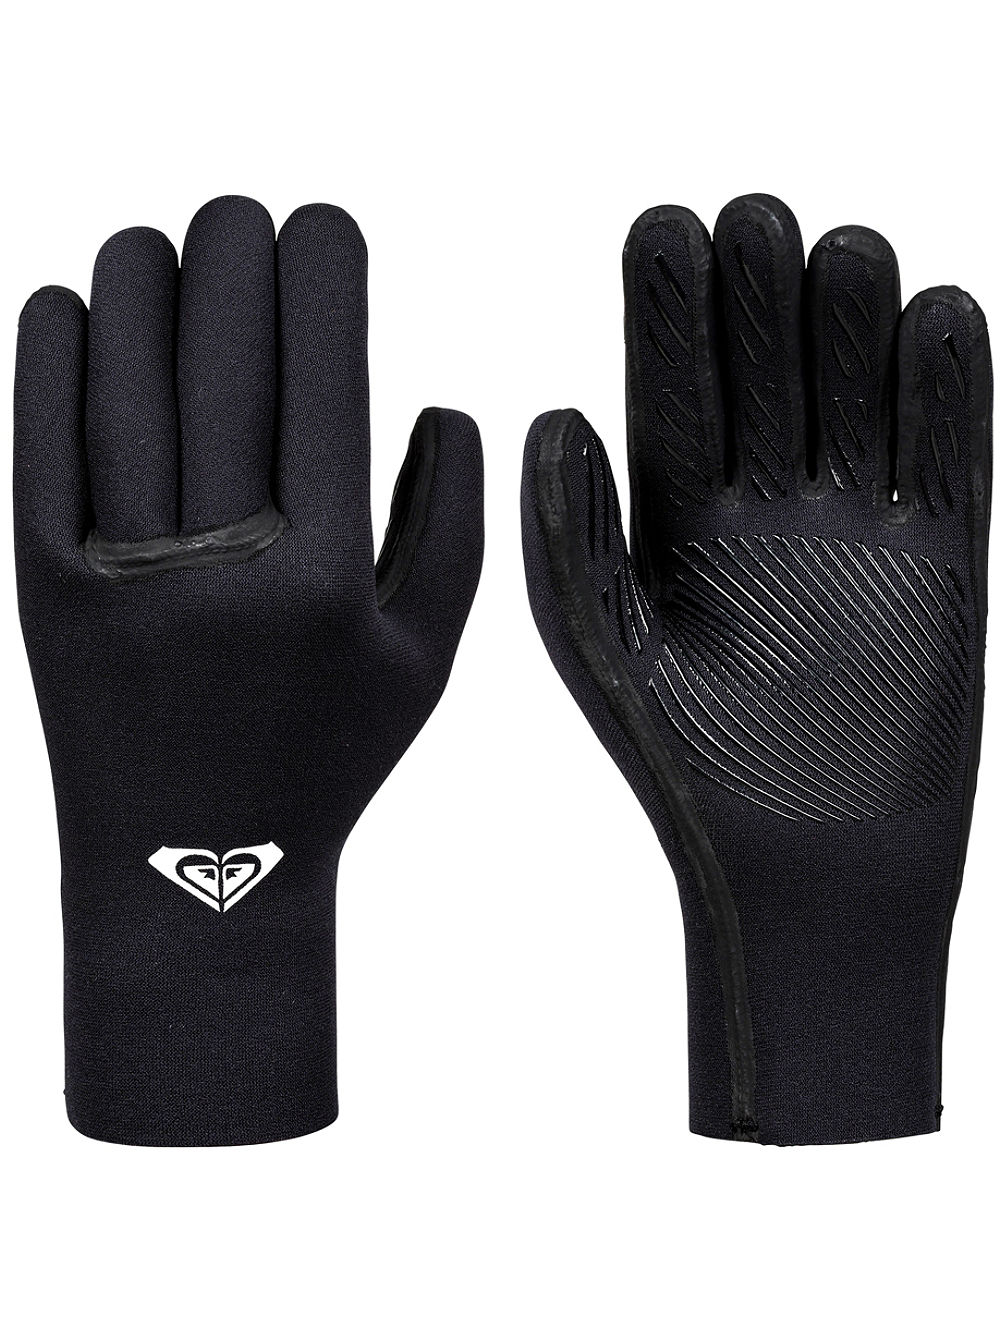 3.0 Syncro+ 5 Finger Gloves